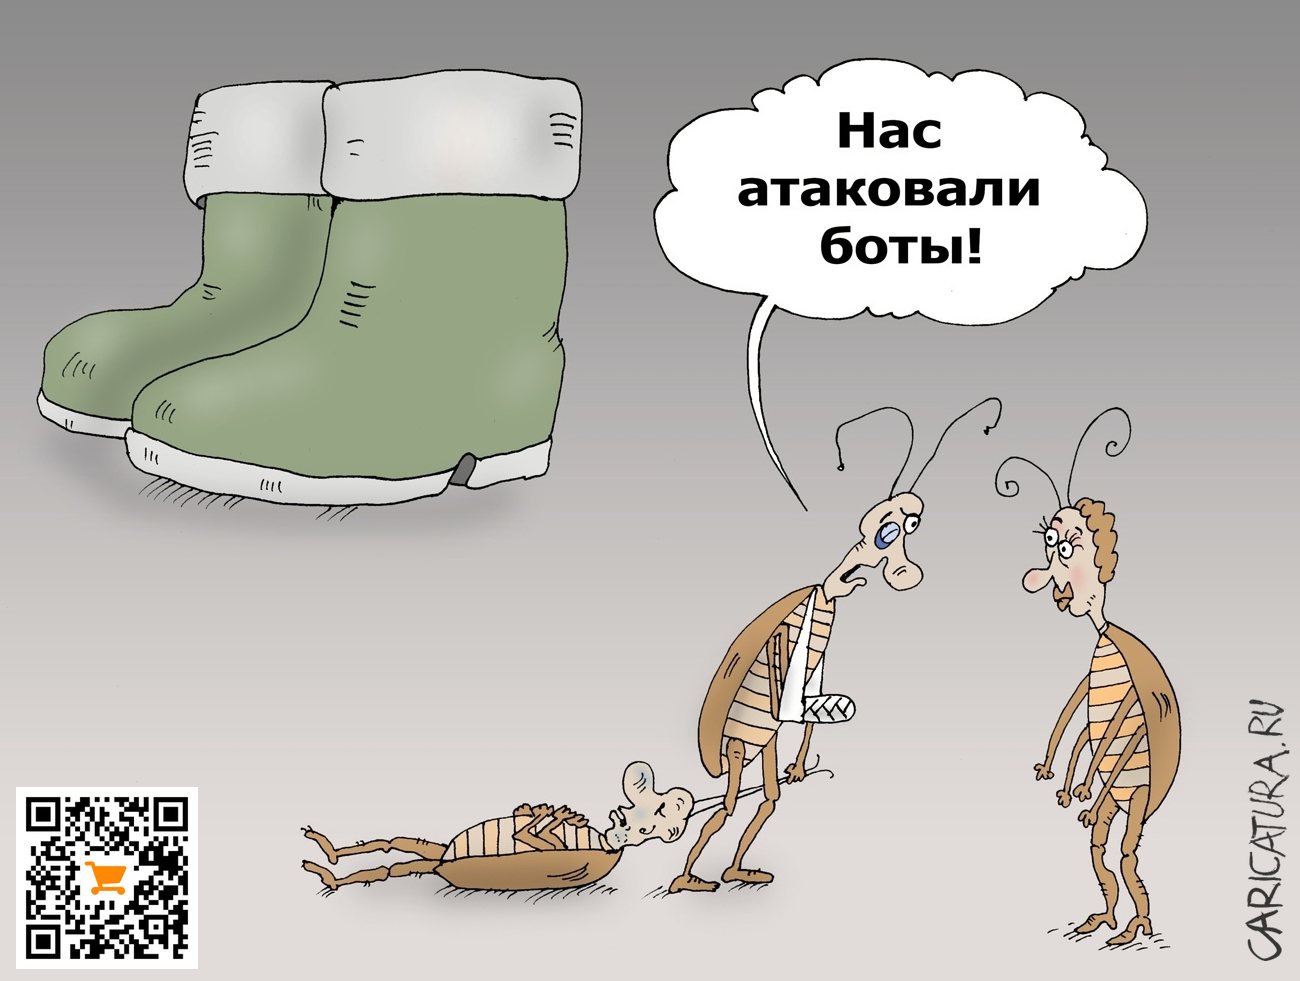 Карикатура "Атака ботов", Валерий Тарасенко